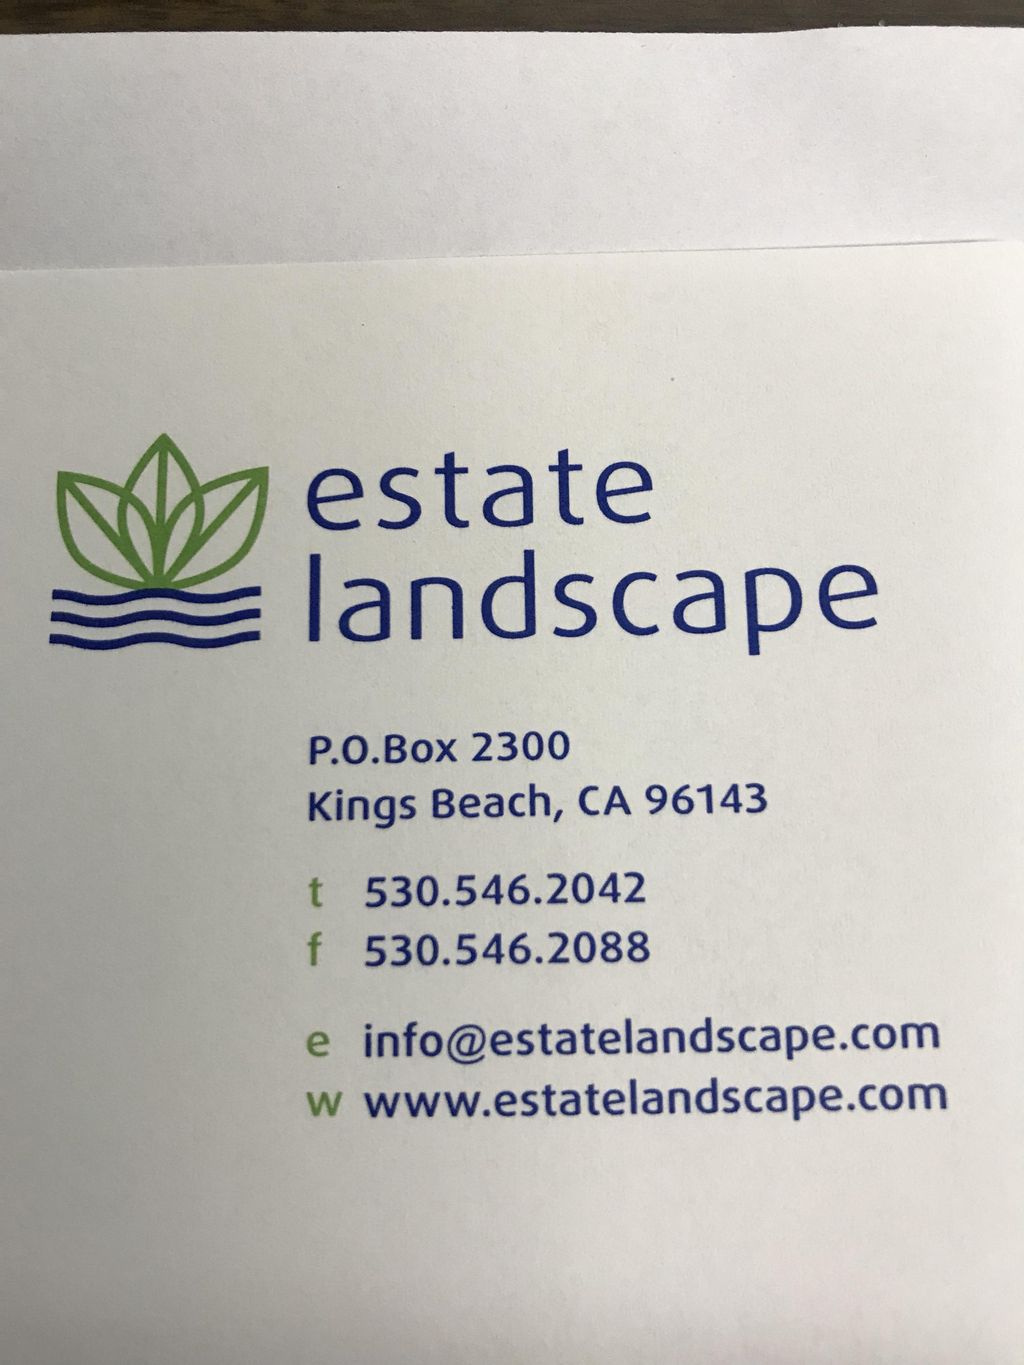 Estate Landscape and Irrigation Inc.